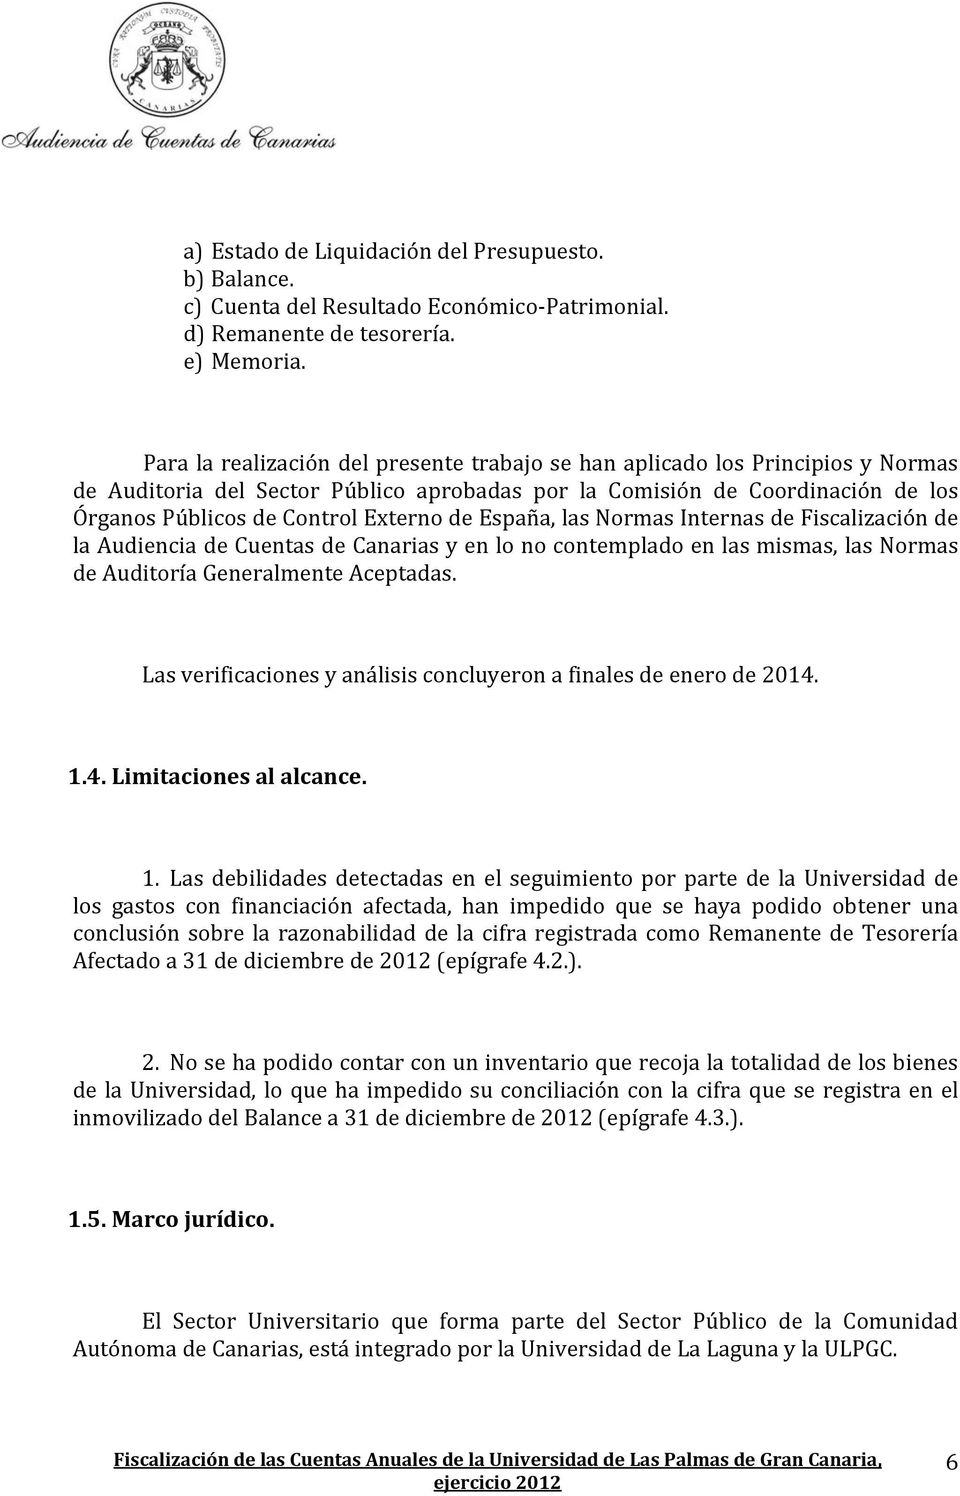 de España, las Normas Internas de Fiscalización de la Audiencia de Cuentas de Canarias y en lo no contemplado en las mismas, las Normas de Auditoría Generalmente Aceptadas.